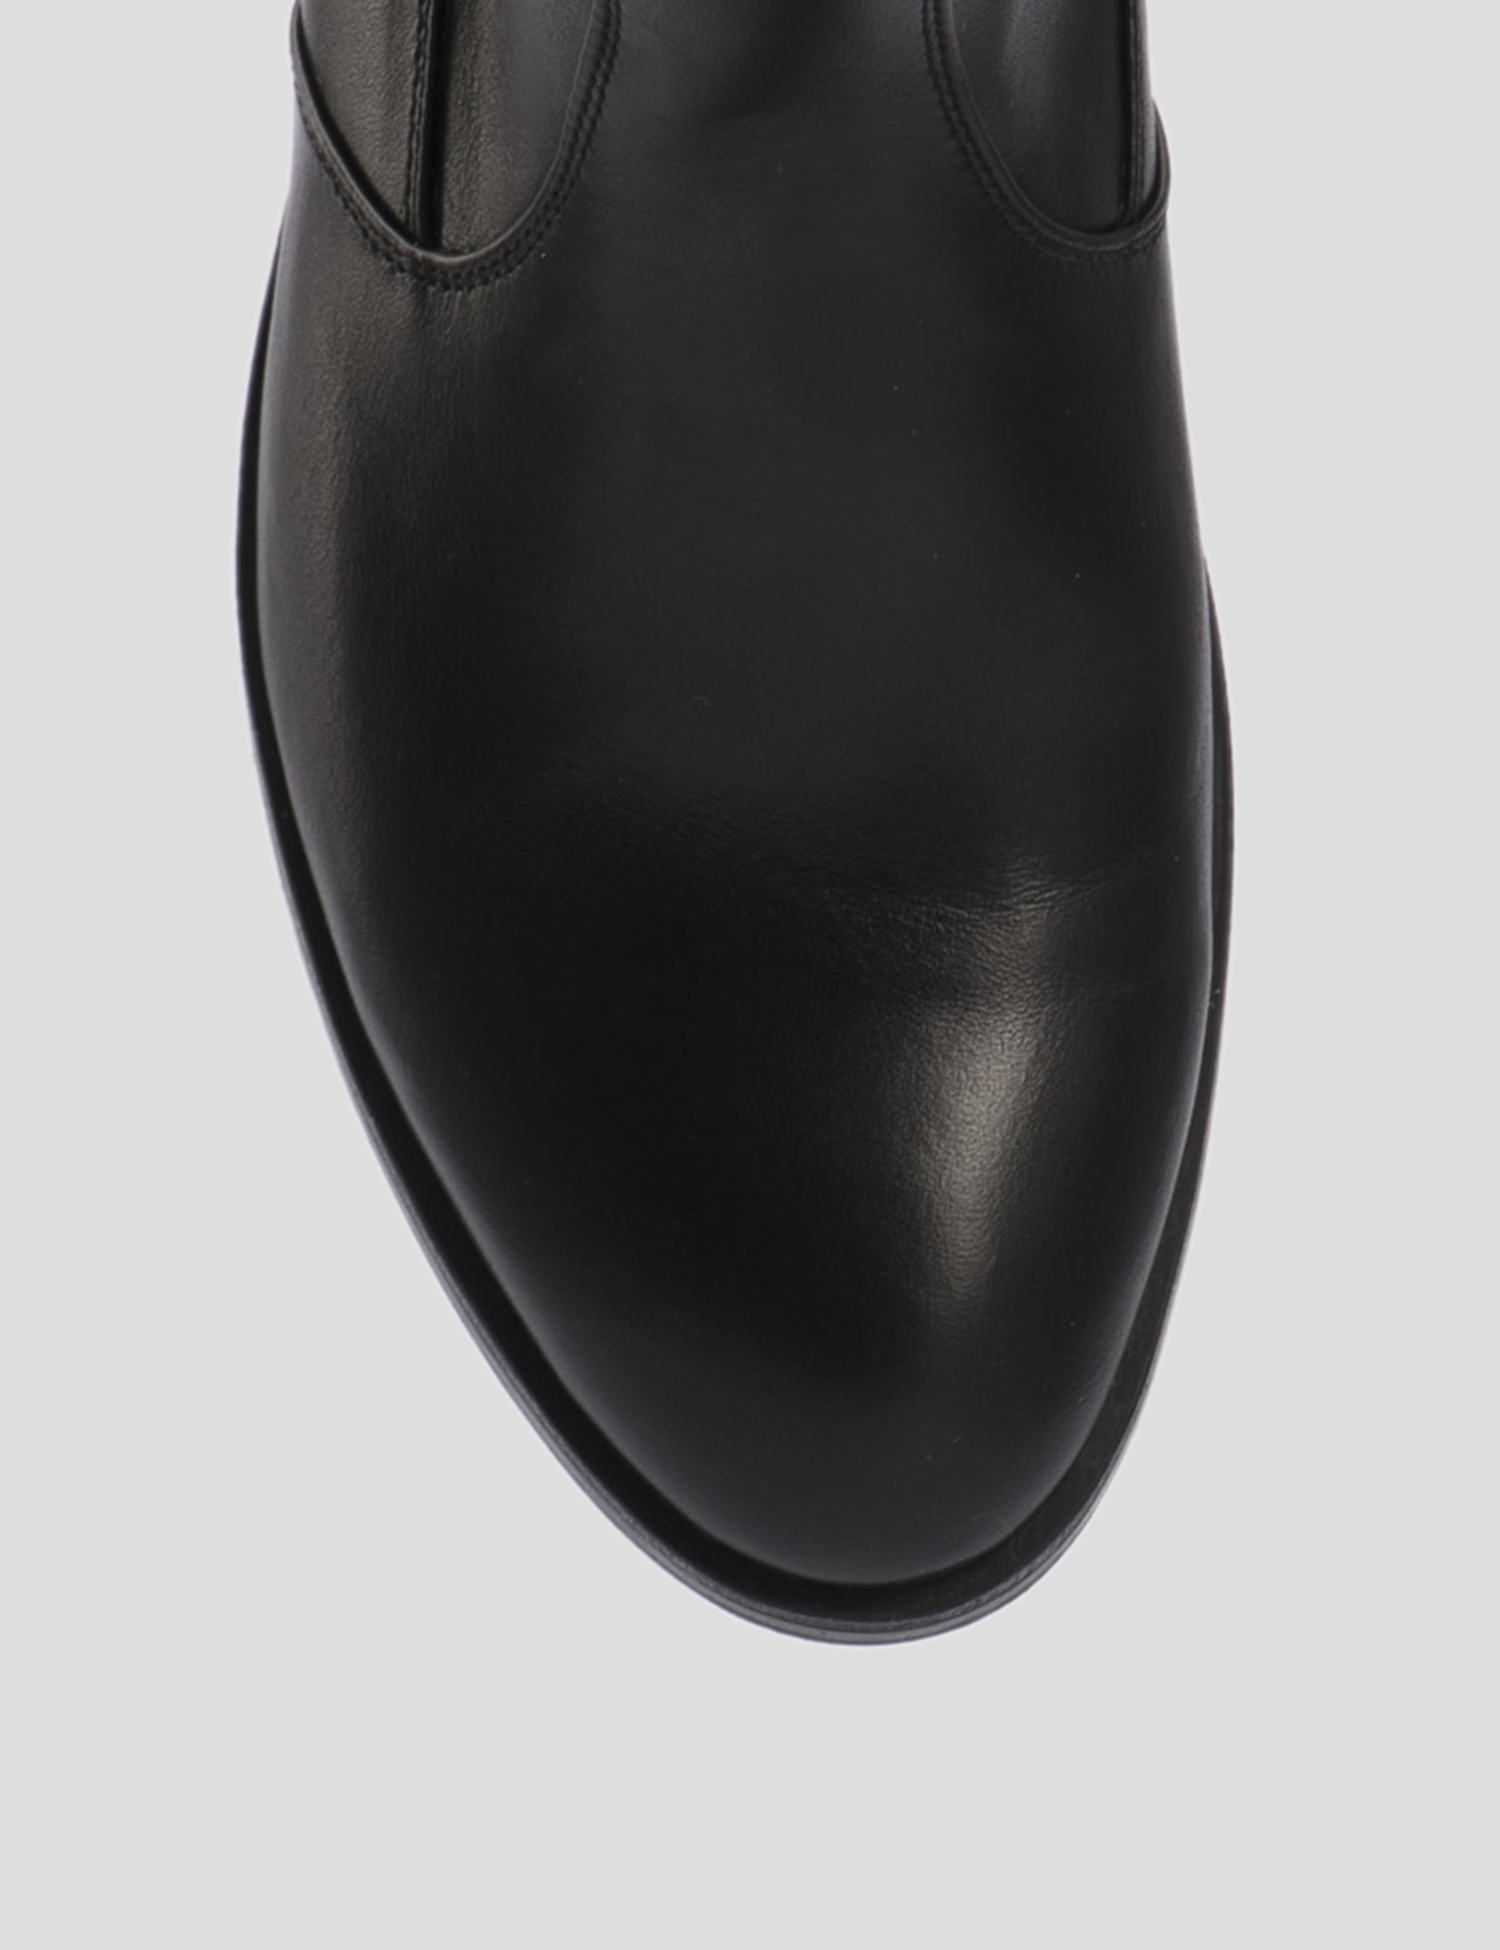 Картинка Жіночі чорні шкіряні чоботи